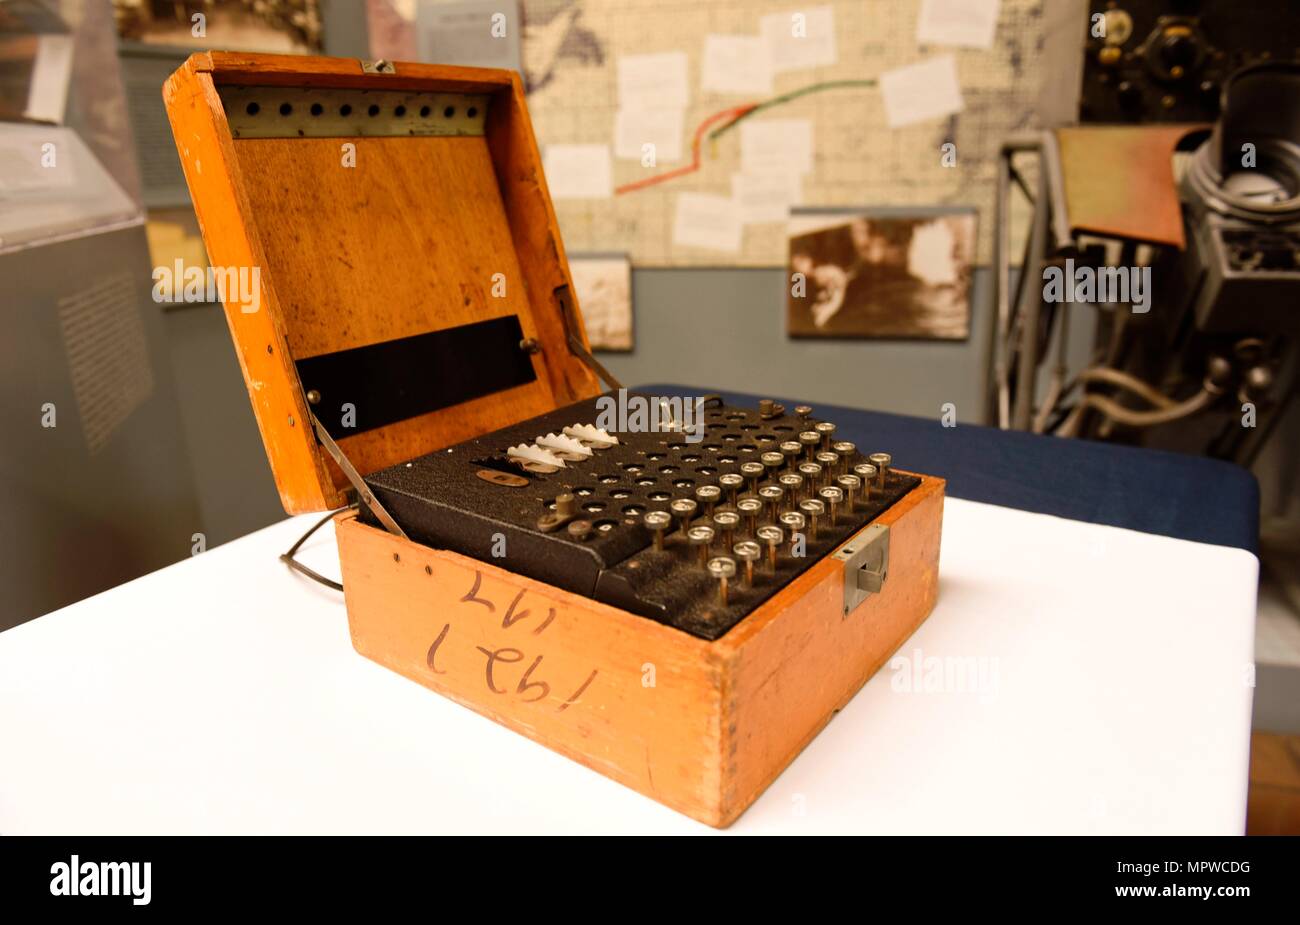 Il 18 aprile 2017, il Museo Nazionale della Marina degli Stati Uniti ha  accolto con favore l'arrivo di un quattro-rotore macchina Enigma dalla  Cryptologic Display di comando in Pensacola, FL. Acquisita dal